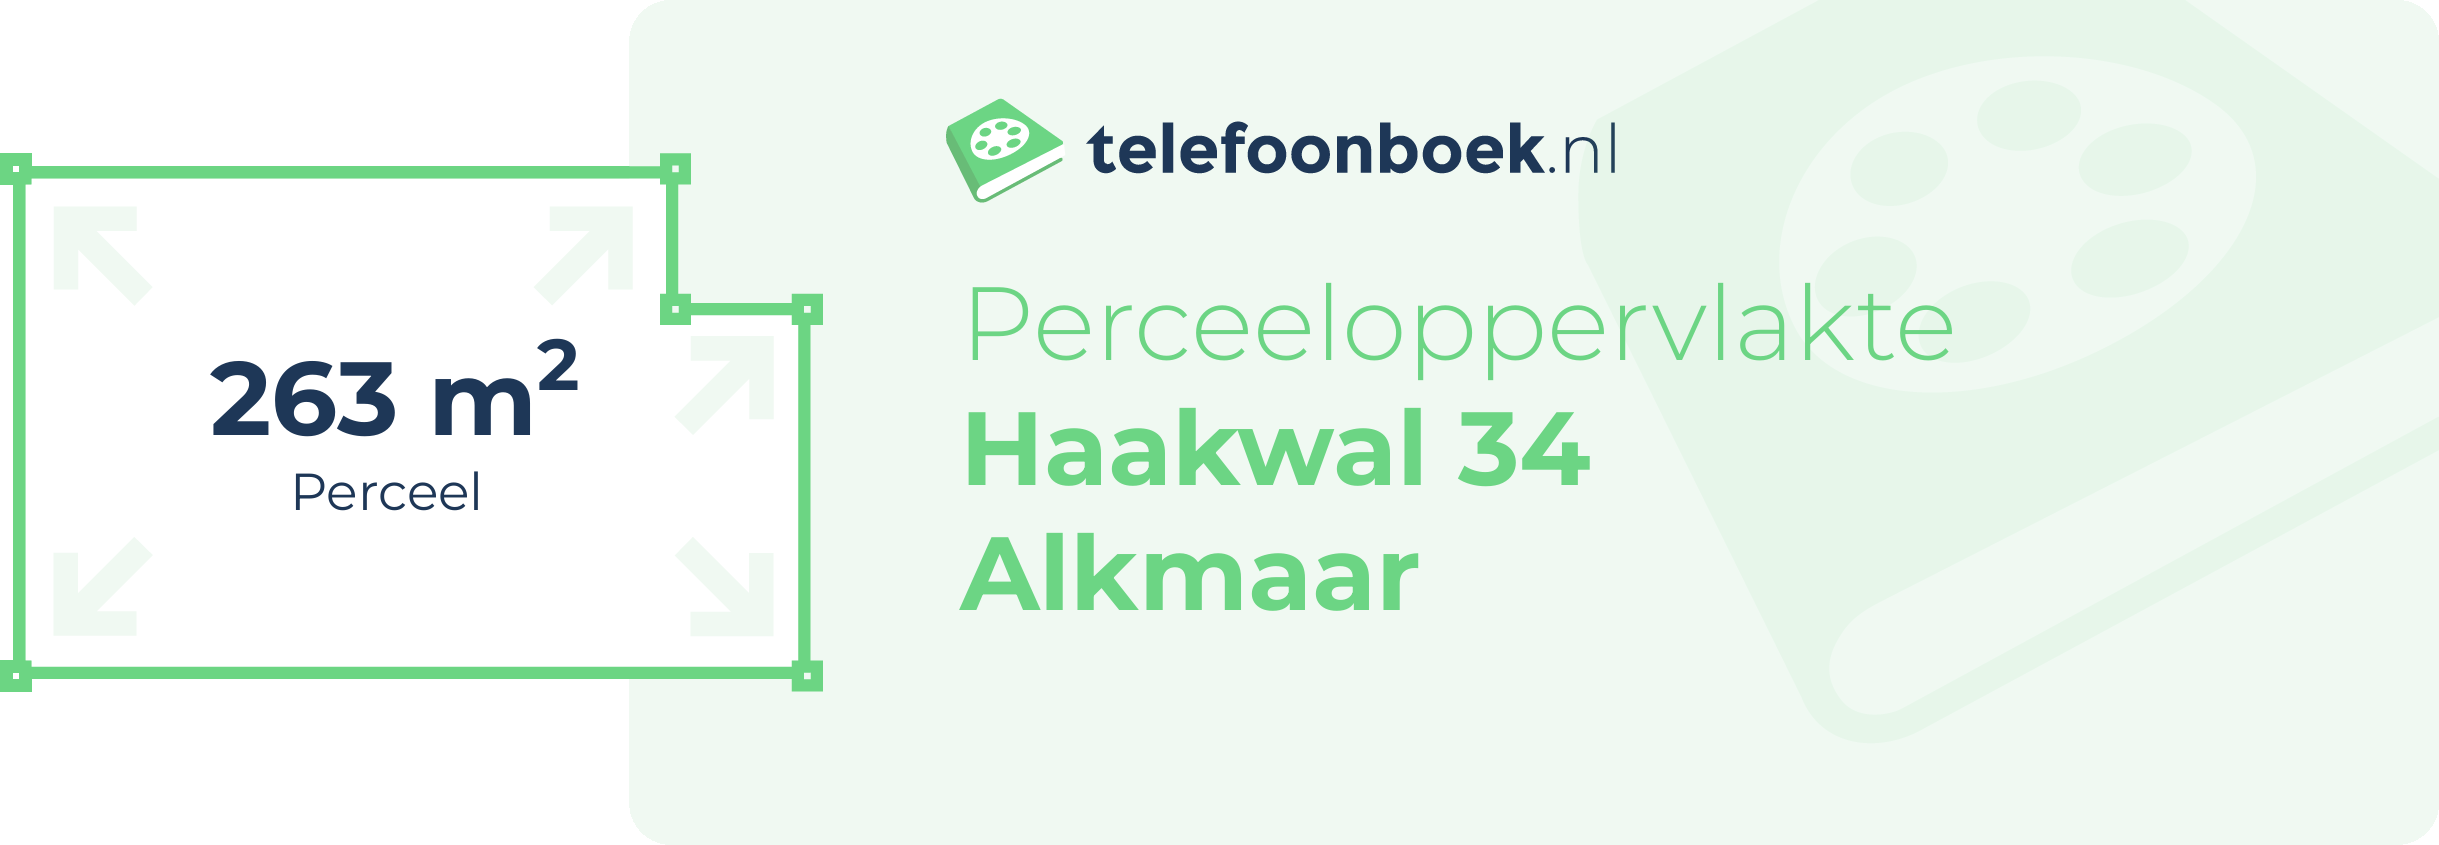 Perceeloppervlakte Haakwal 34 Alkmaar